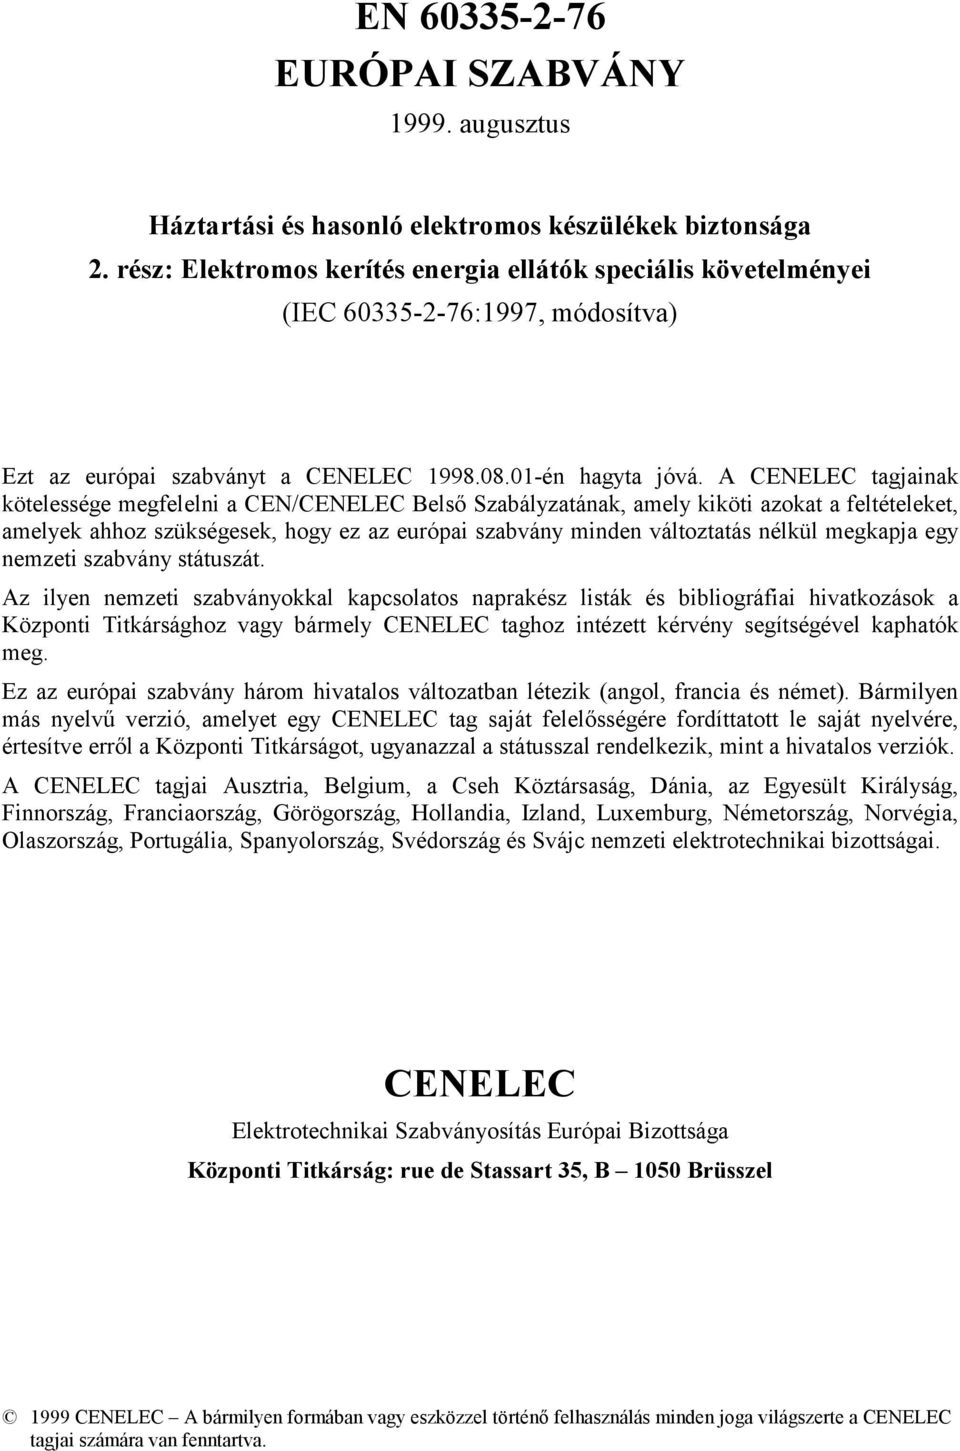 A CENELEC tagjainak kötelessége megfelelni a CEN/CENELEC Belső Szabályzatának, amely kiköti azokat a feltételeket, amelyek ahhoz szükségesek, hogy ez az európai szabvány minden változtatás nélkül